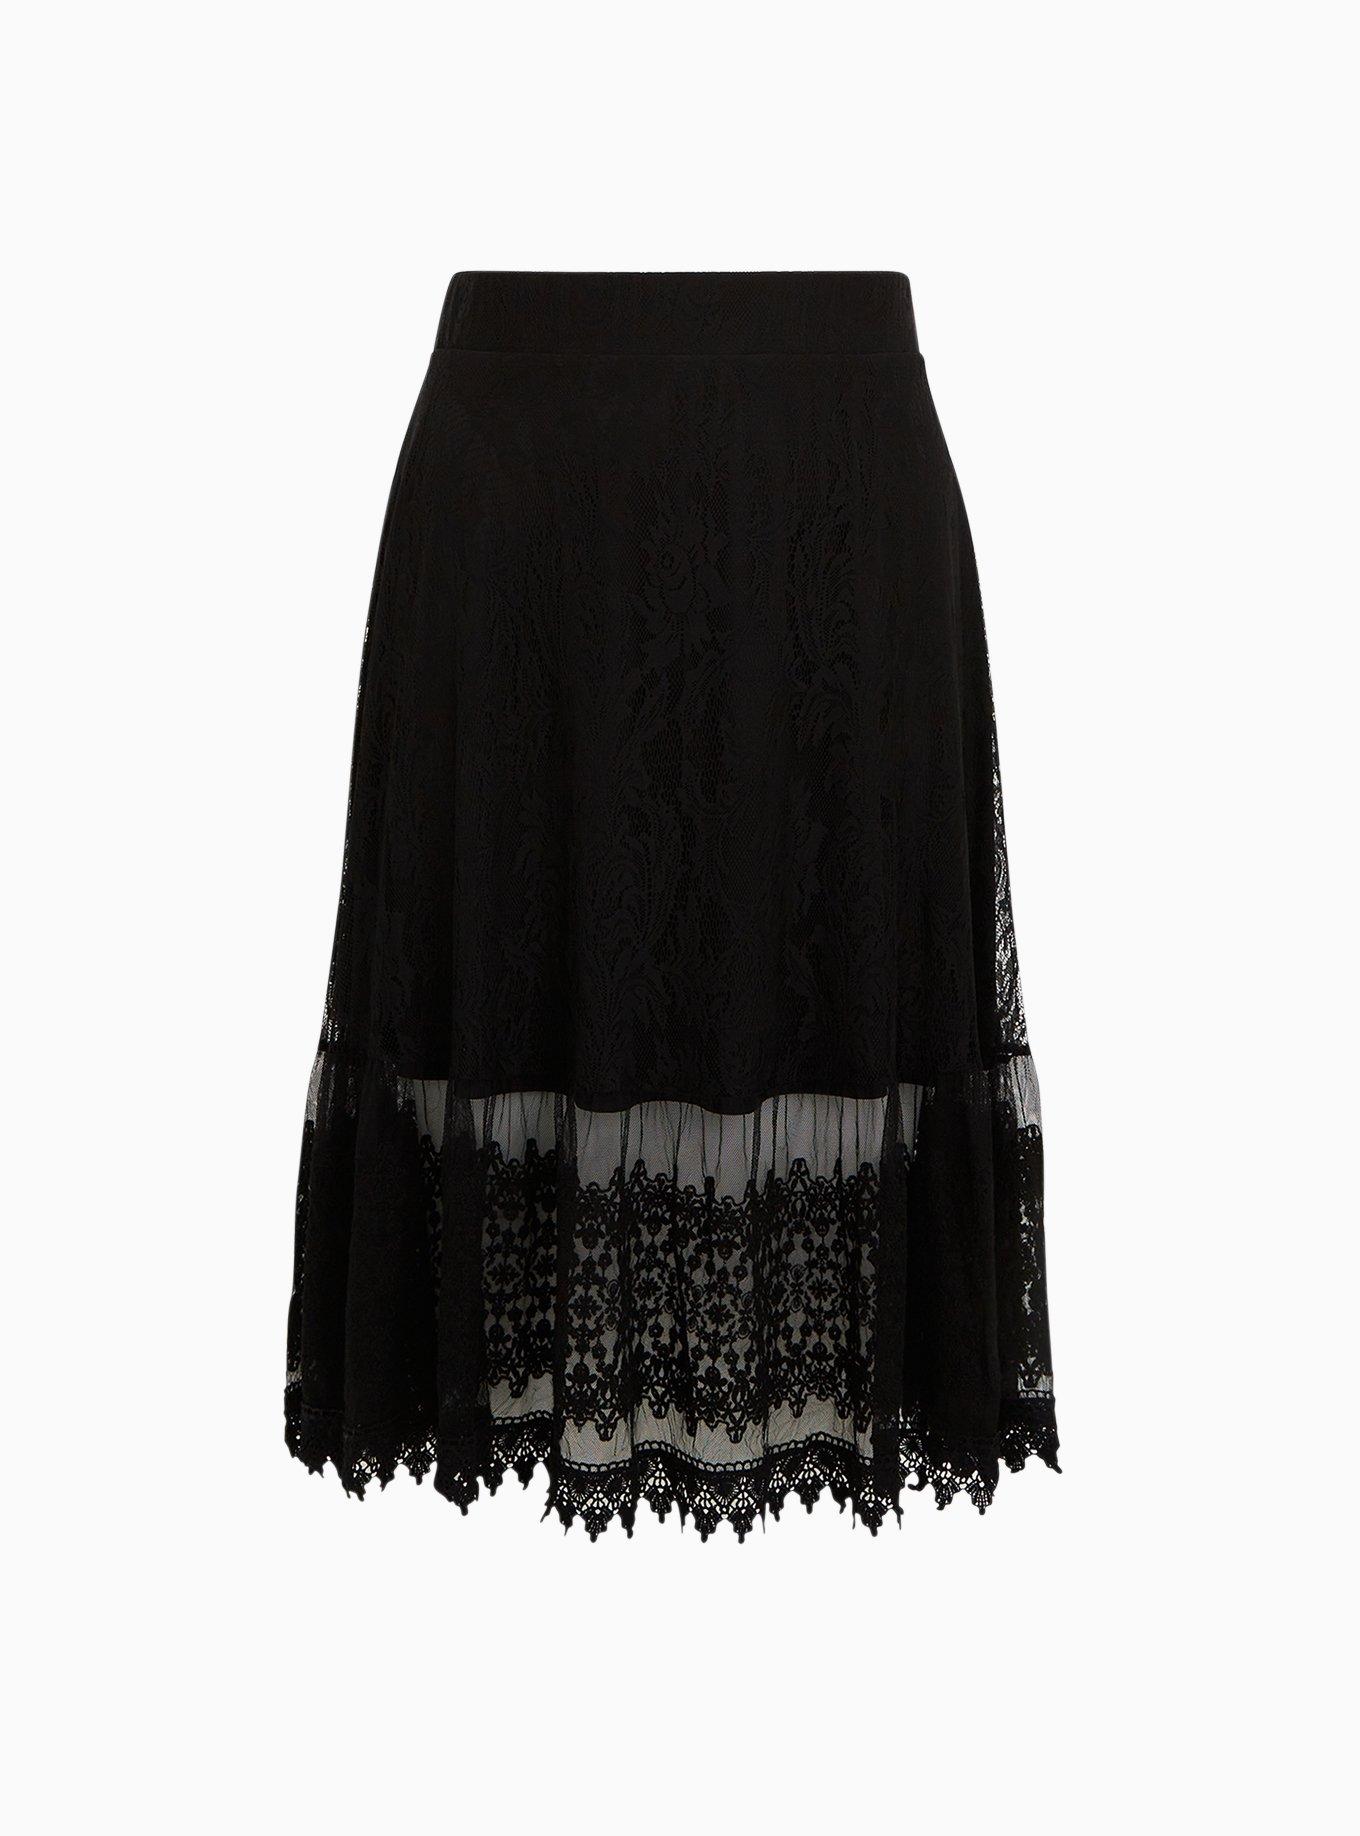 Plus Size - Black Lace Midi Skirt - Torrid